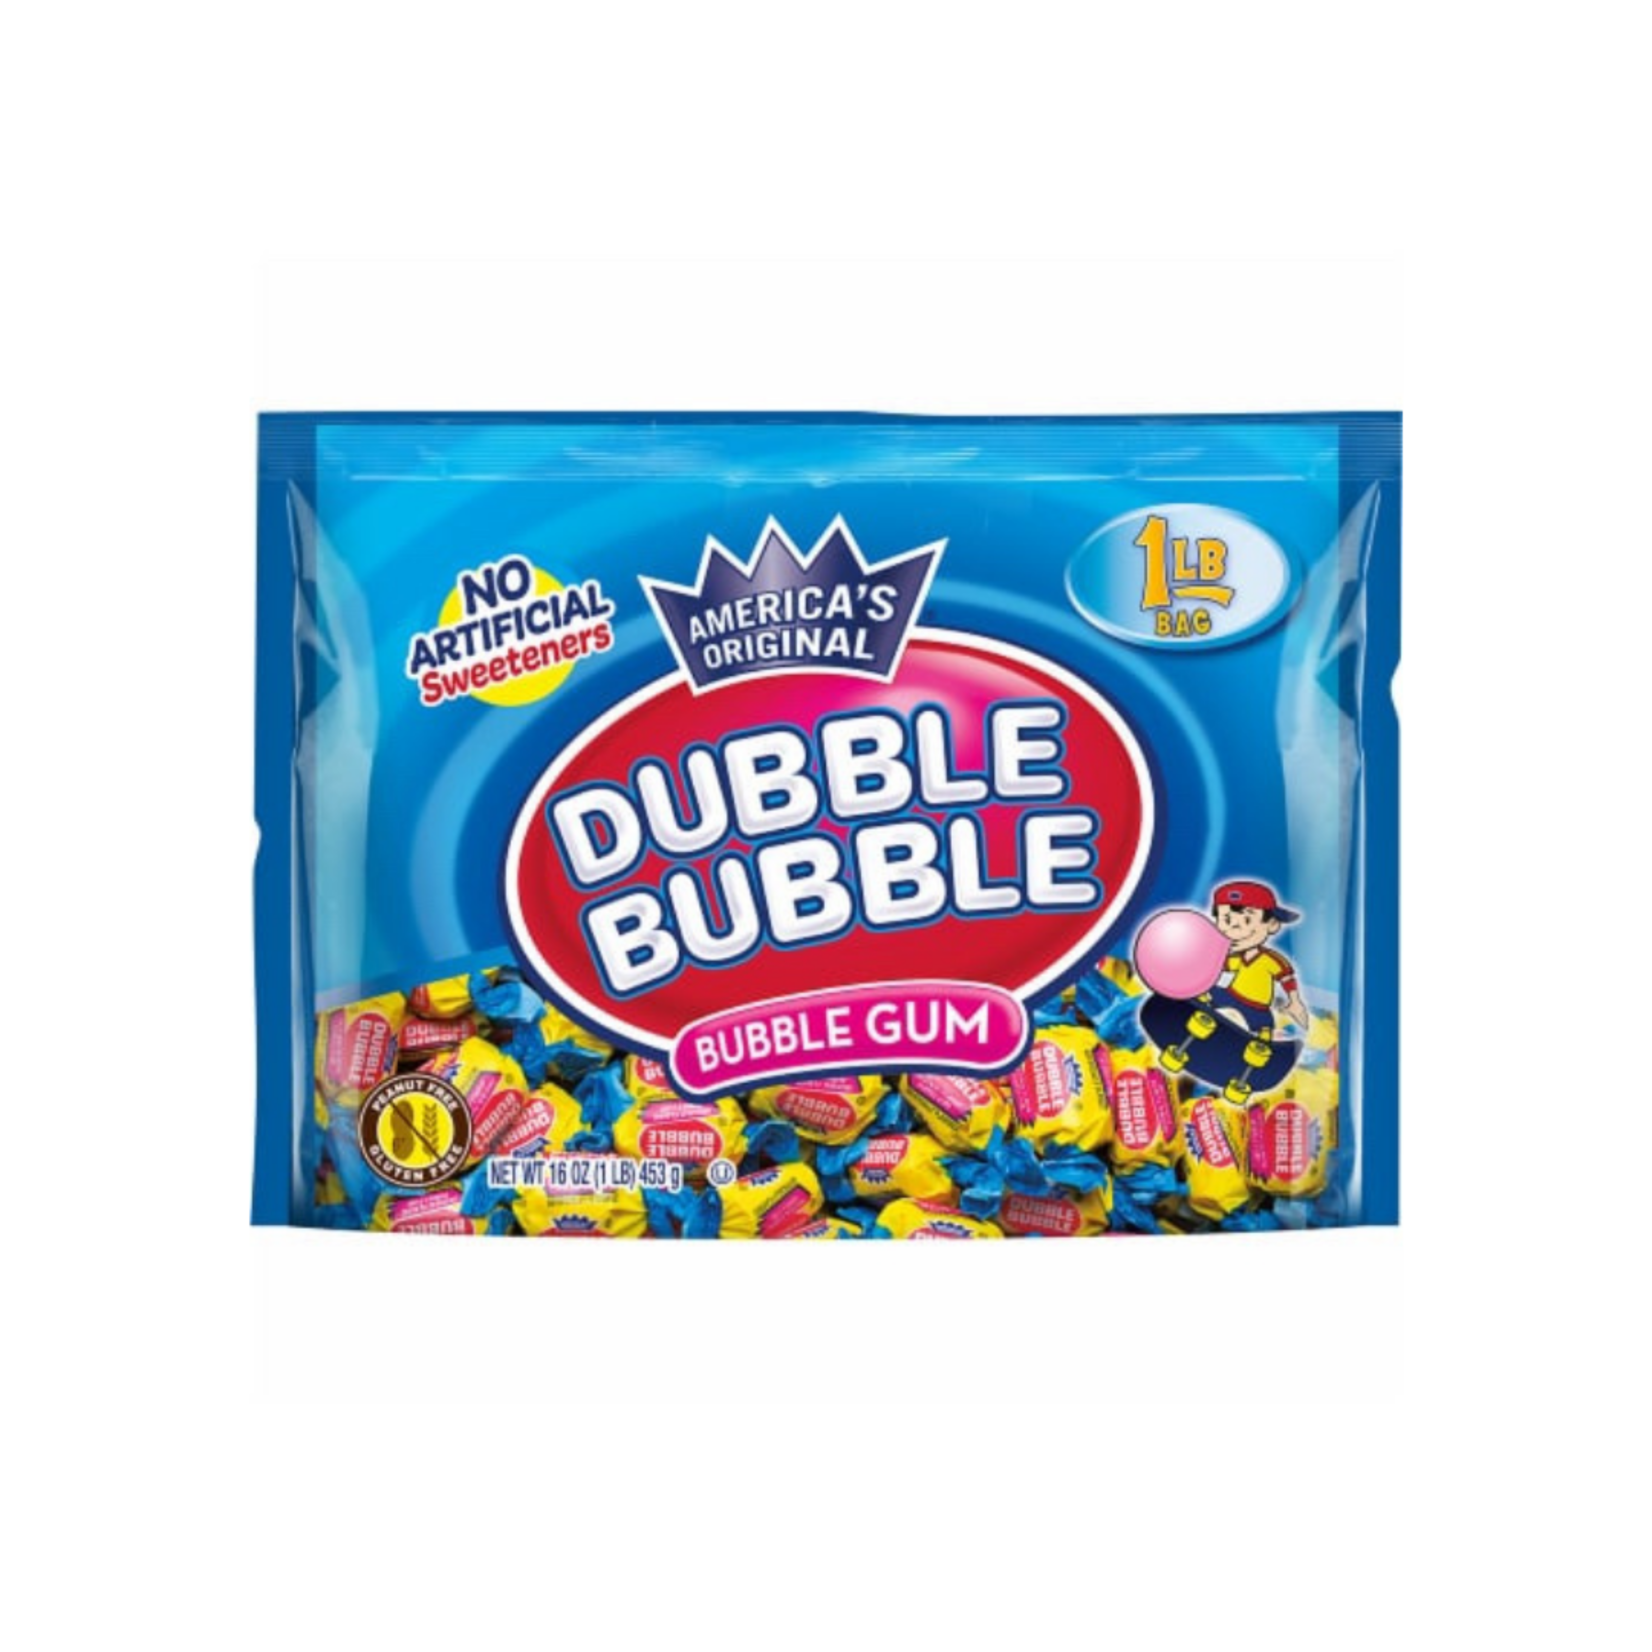 Dubble Bubble Dubble Bubble Original Bubble Gum